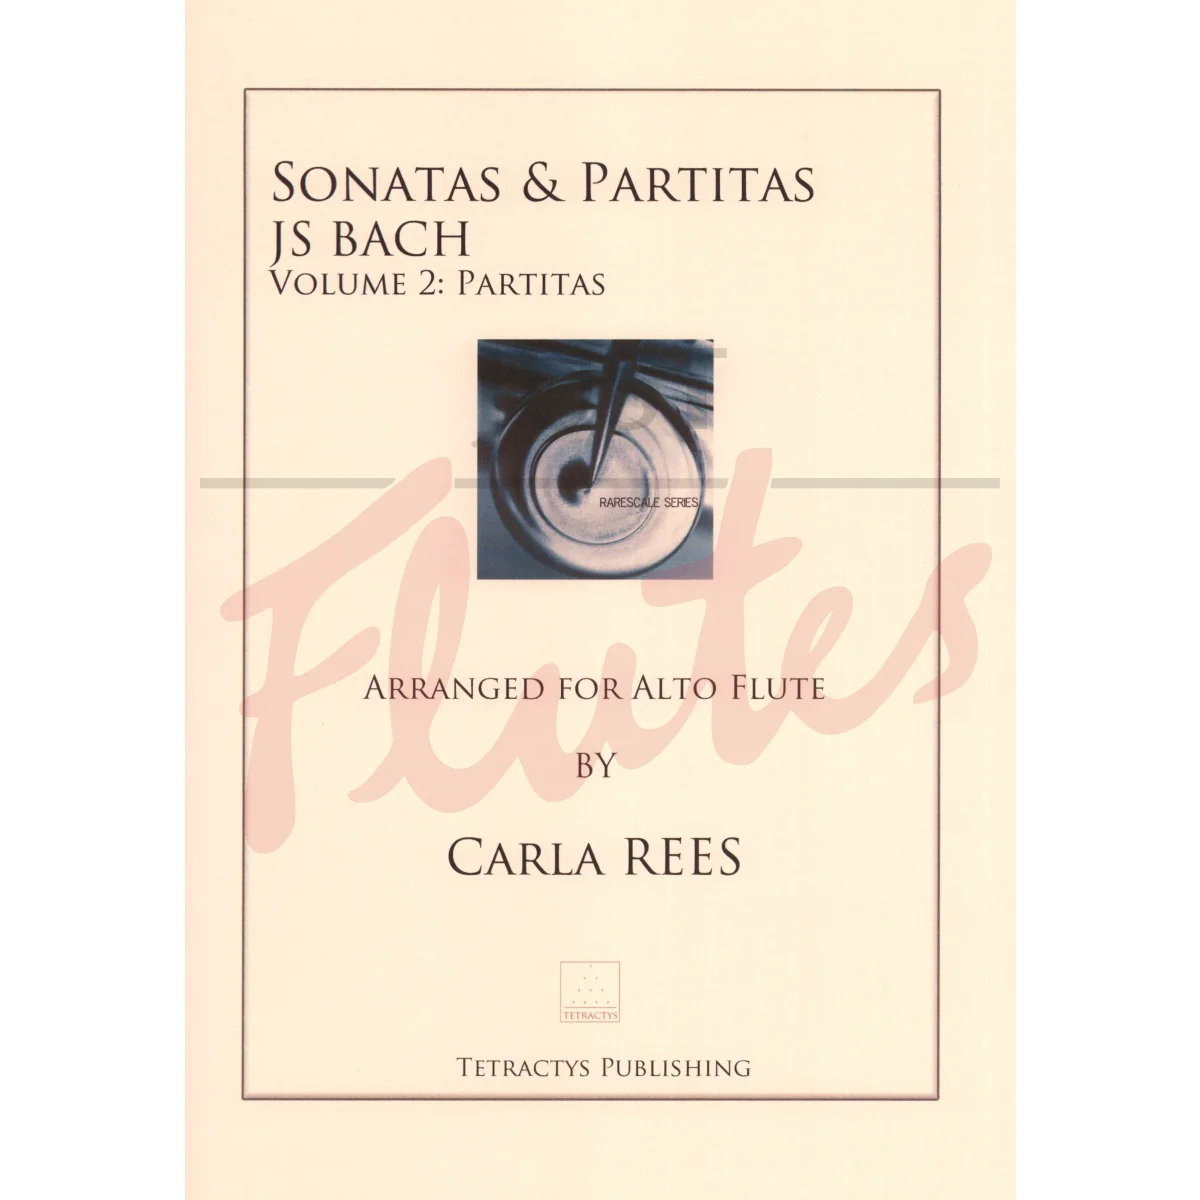 Sonatas and Partitas Volume 2 - Partitas